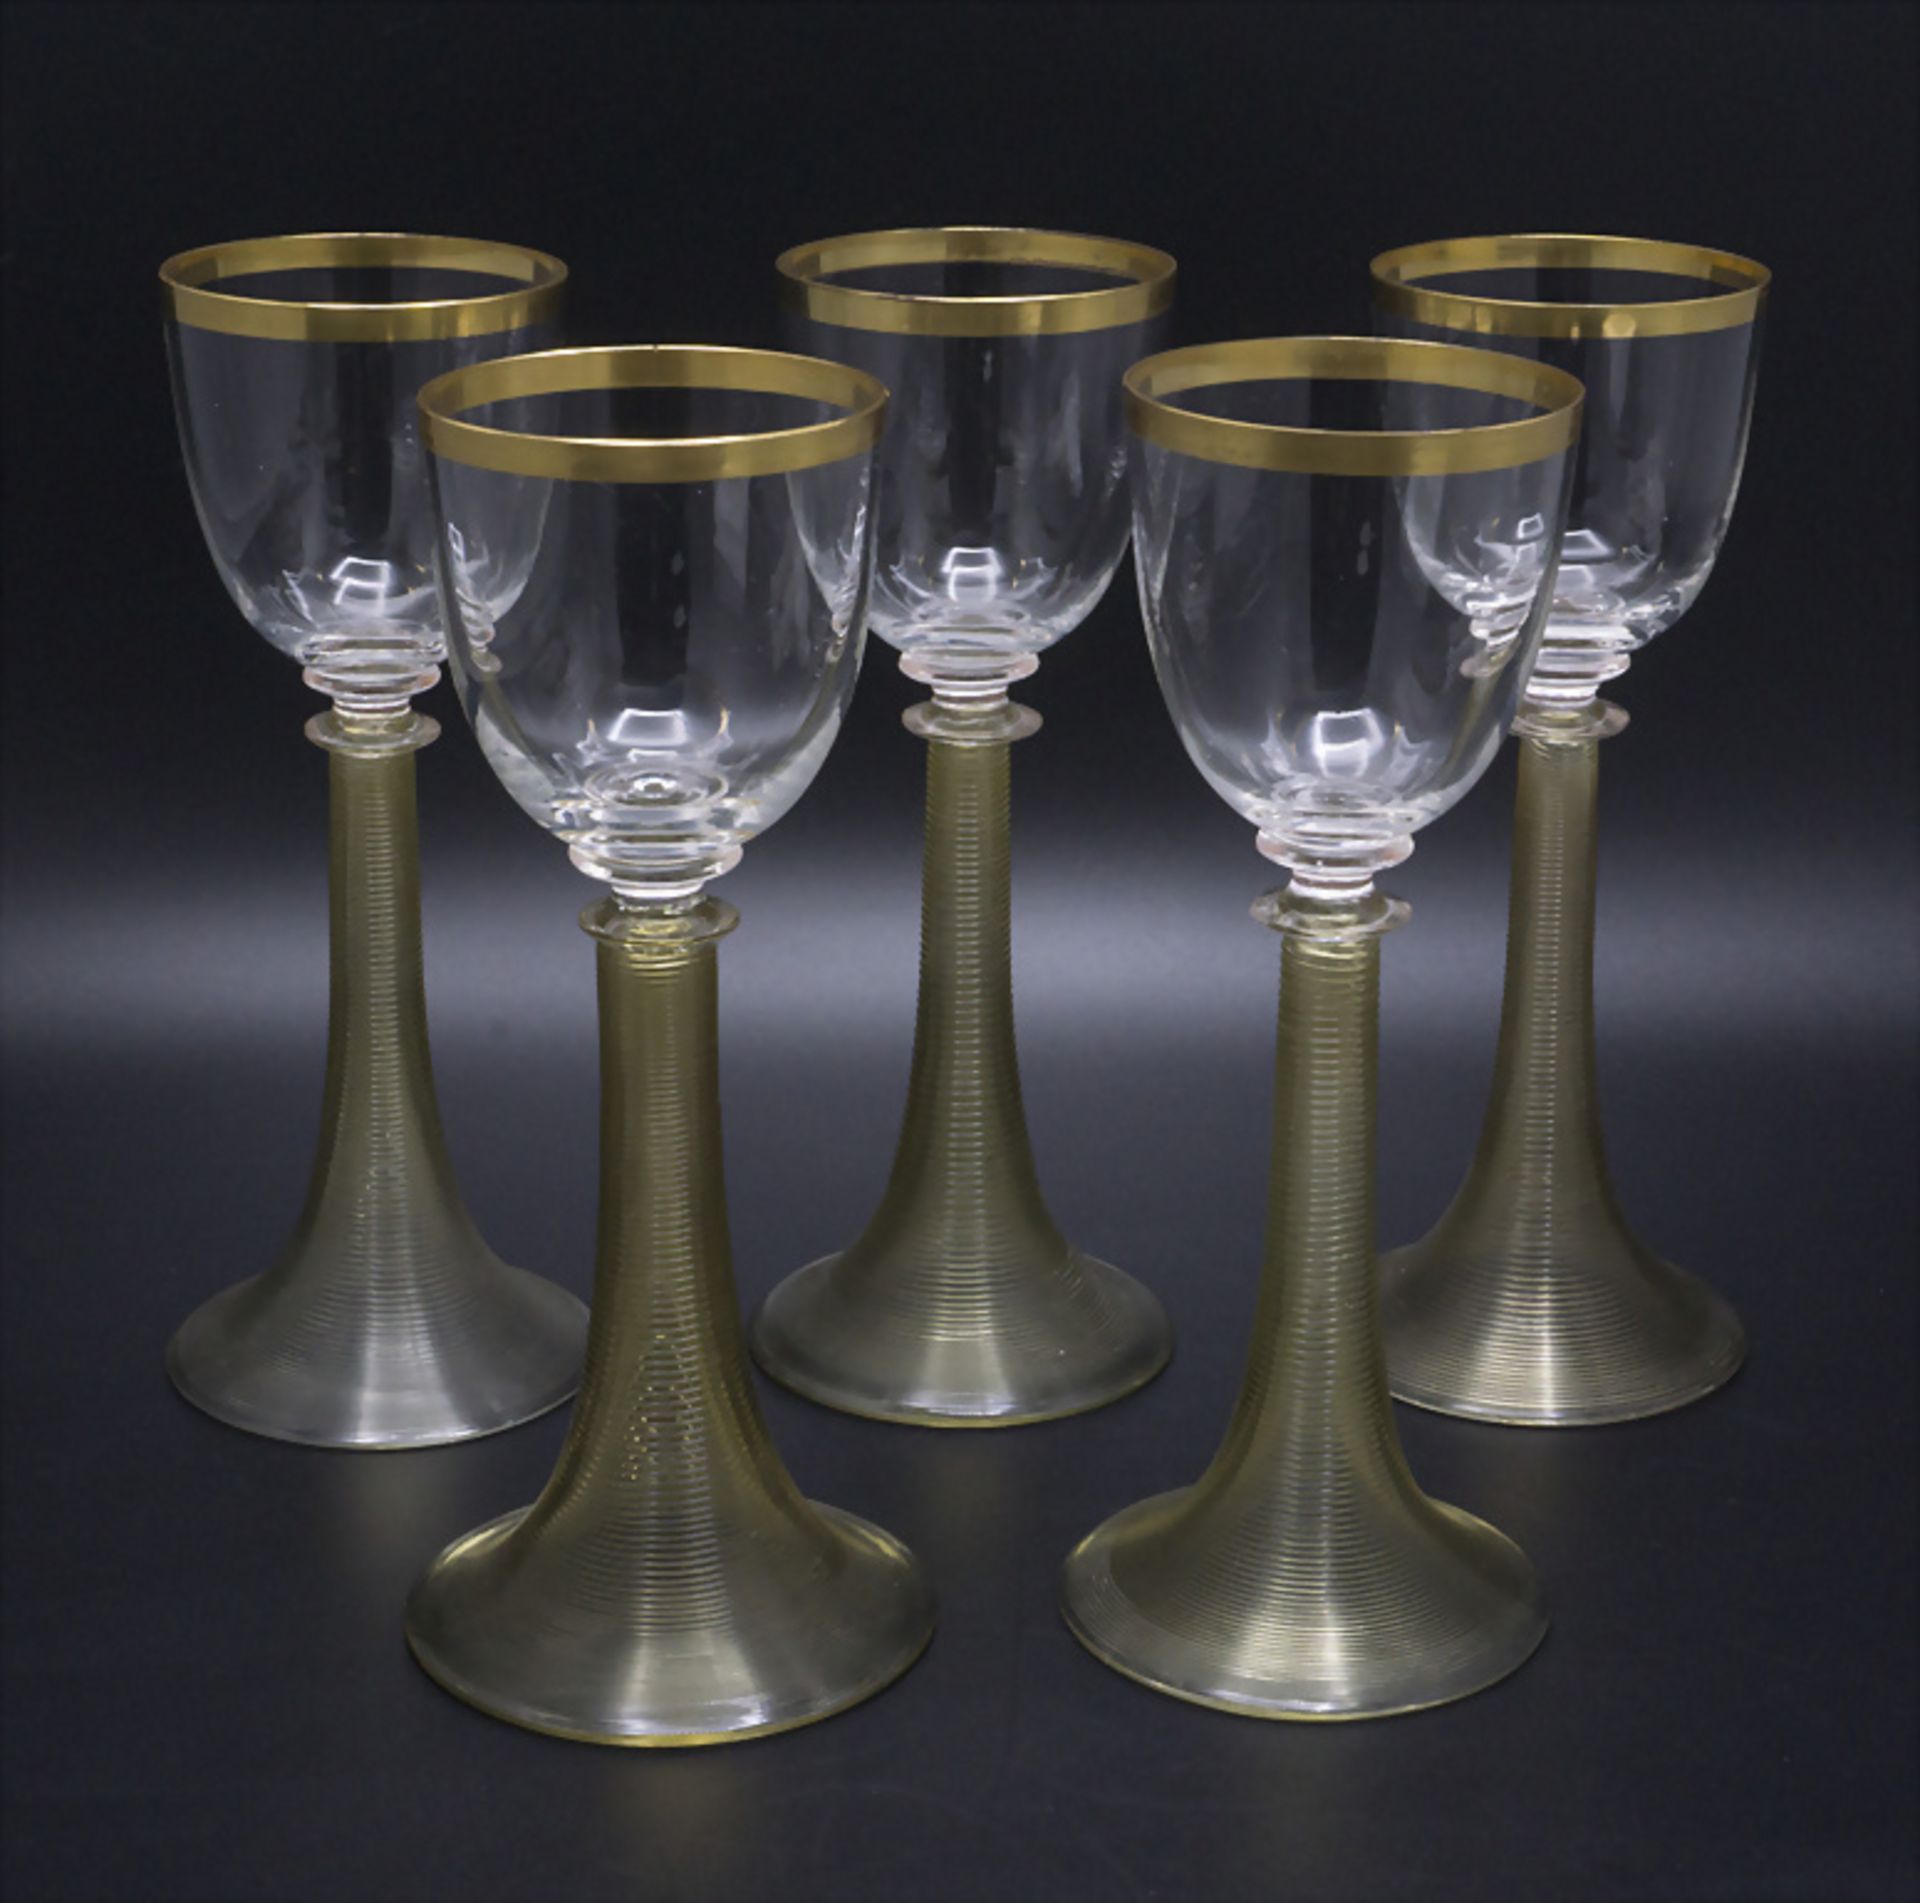 5 Jugendstil Weingläser / 5 Art Nouveau wine glasses, Theresienthal, um 1900